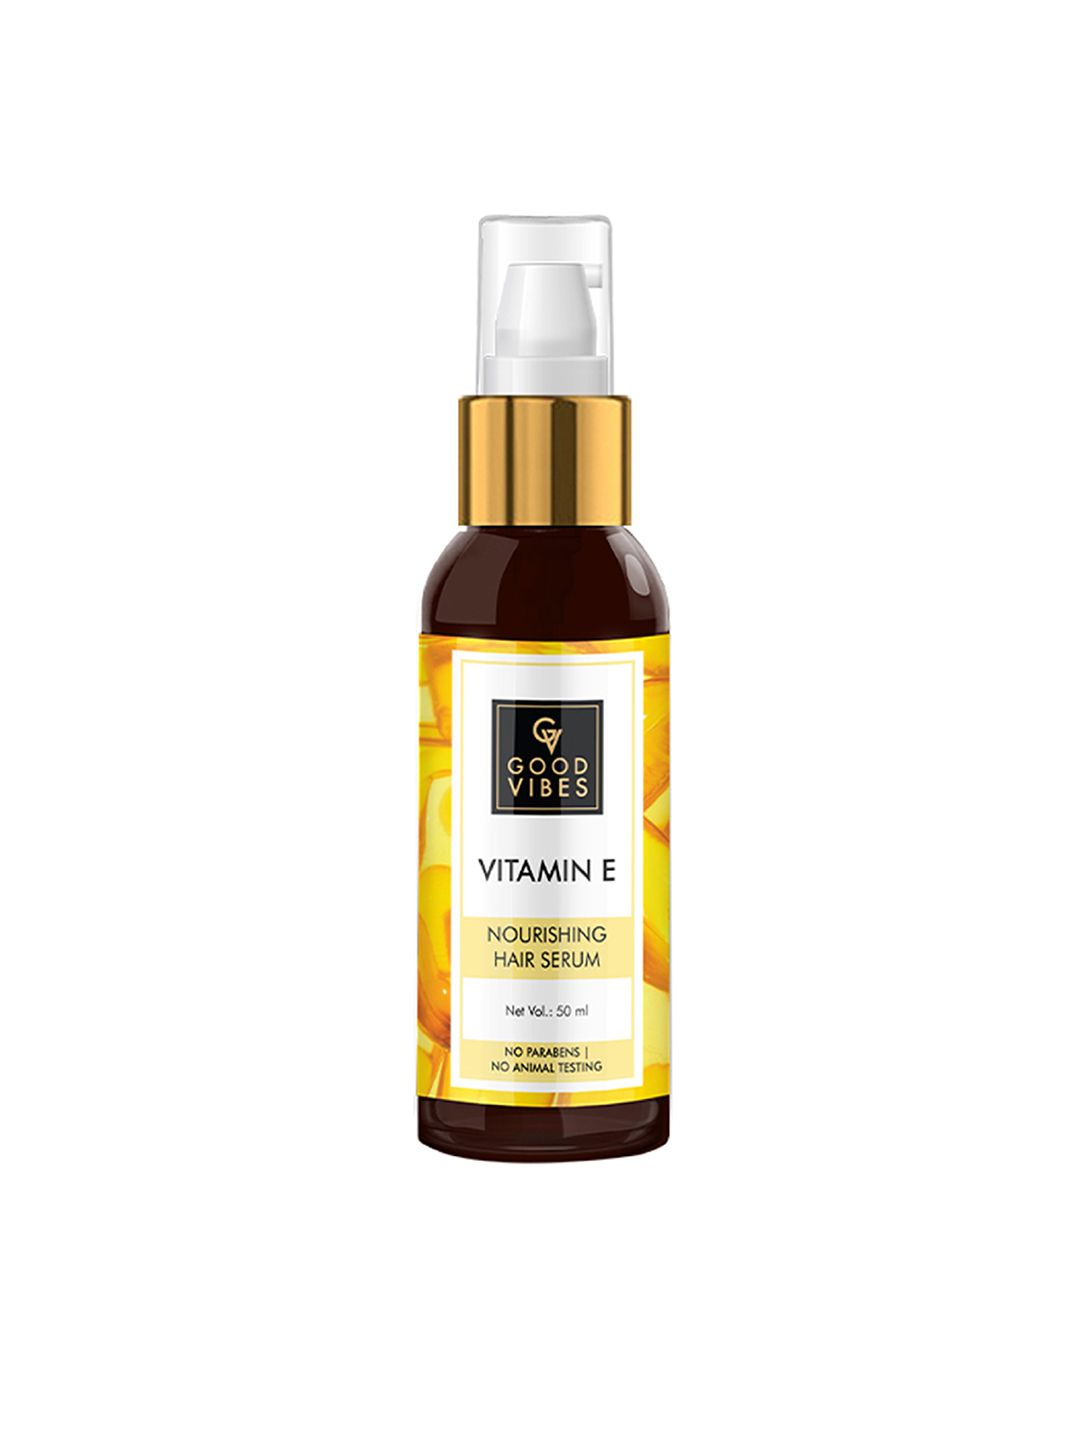 Good Vibes Vitamin E Nourishing Hair Serum - 50 ml Price in India